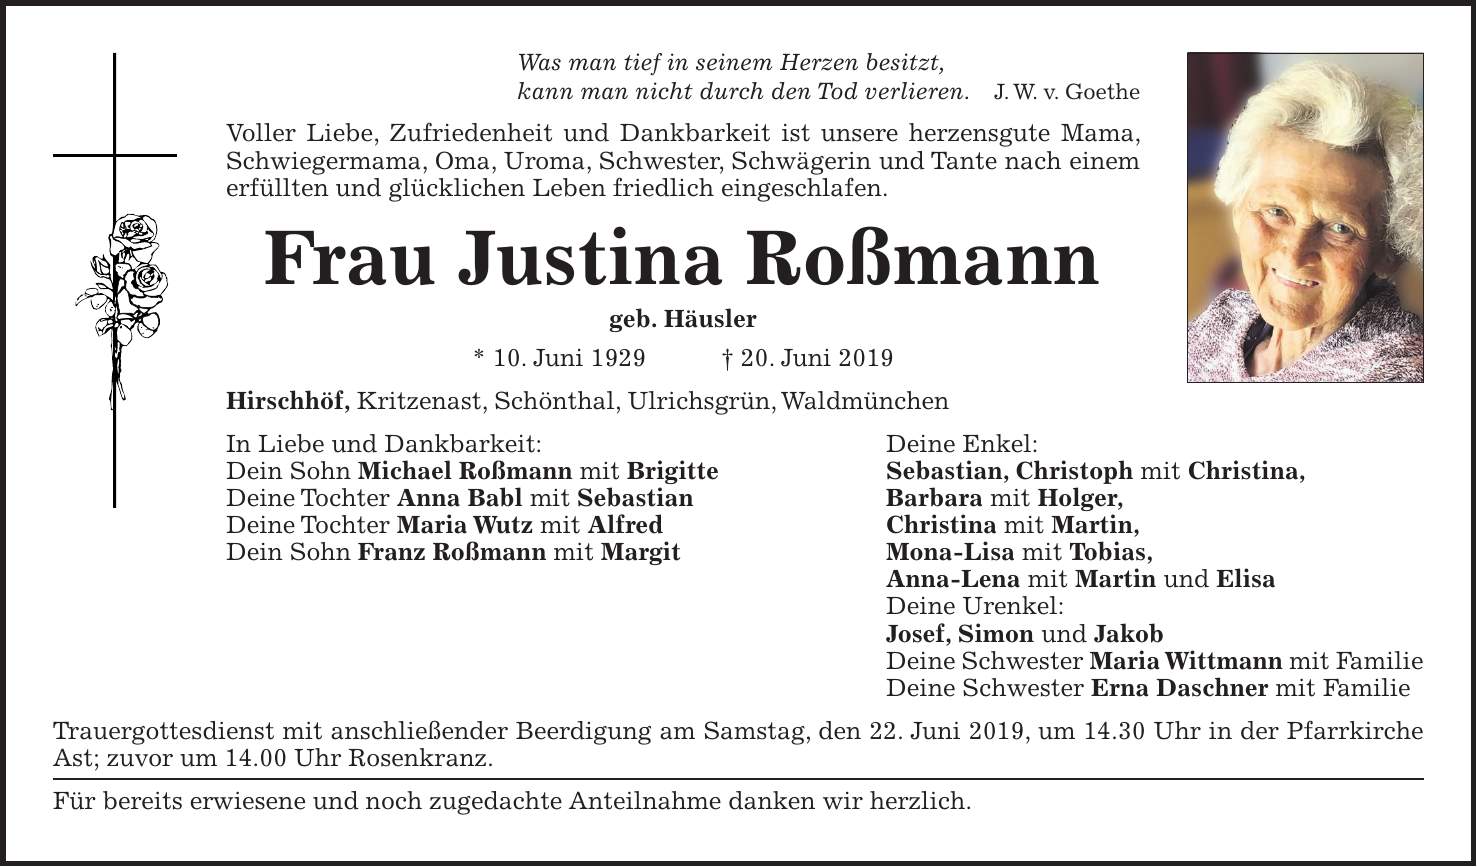 Was man tief in seinem Herzen besitzt, kann man nicht durch den Tod verlieren. J. W. v. Goethe Voller Liebe, Zufriedenheit und Dankbarkeit ist unsere herzensgute Mama, Schwiegermama, Oma, Uroma, Schwester, Schwägerin und Tante nach einem erfüllten und glücklichen Leben friedlich eingeschlafen. Frau Justina Roßmann geb. Häusler * 10. Juni 1929 + 20. Juni 2019 Hirschhöf, Kritzenast, Schönthal, Ulrichsgrün, Waldmünchen In Liebe und Dankbarkeit: Deine Enkel: Dein Sohn Michael Roßmann mit Brigitte Sebastian, Christoph mit Christina, Deine Tochter Anna Babl mit Sebastian Barbara mit Holger, Deine Tochter Maria Wutz mit Alfred Christina mit Martin, Dein Sohn Franz Roßmann mit Margit Mona-Lisa mit Tobias, Anna-Lena mit Martin und Elisa Deine Urenkel: Josef, Simon und Jakob Deine Schwester Maria Wittmann mit Familie Deine Schwester Erna Daschner mit Familie Trauergottesdienst mit anschließender Beerdigung am Samstag, den 22. Juni 2019, um 14.30 Uhr in der Pfarrkirche Ast; zuvor um 14.00 Uhr Rosenkranz. Für bereits erwiesene und noch zugedachte Anteilnahme danken wir herzlich.